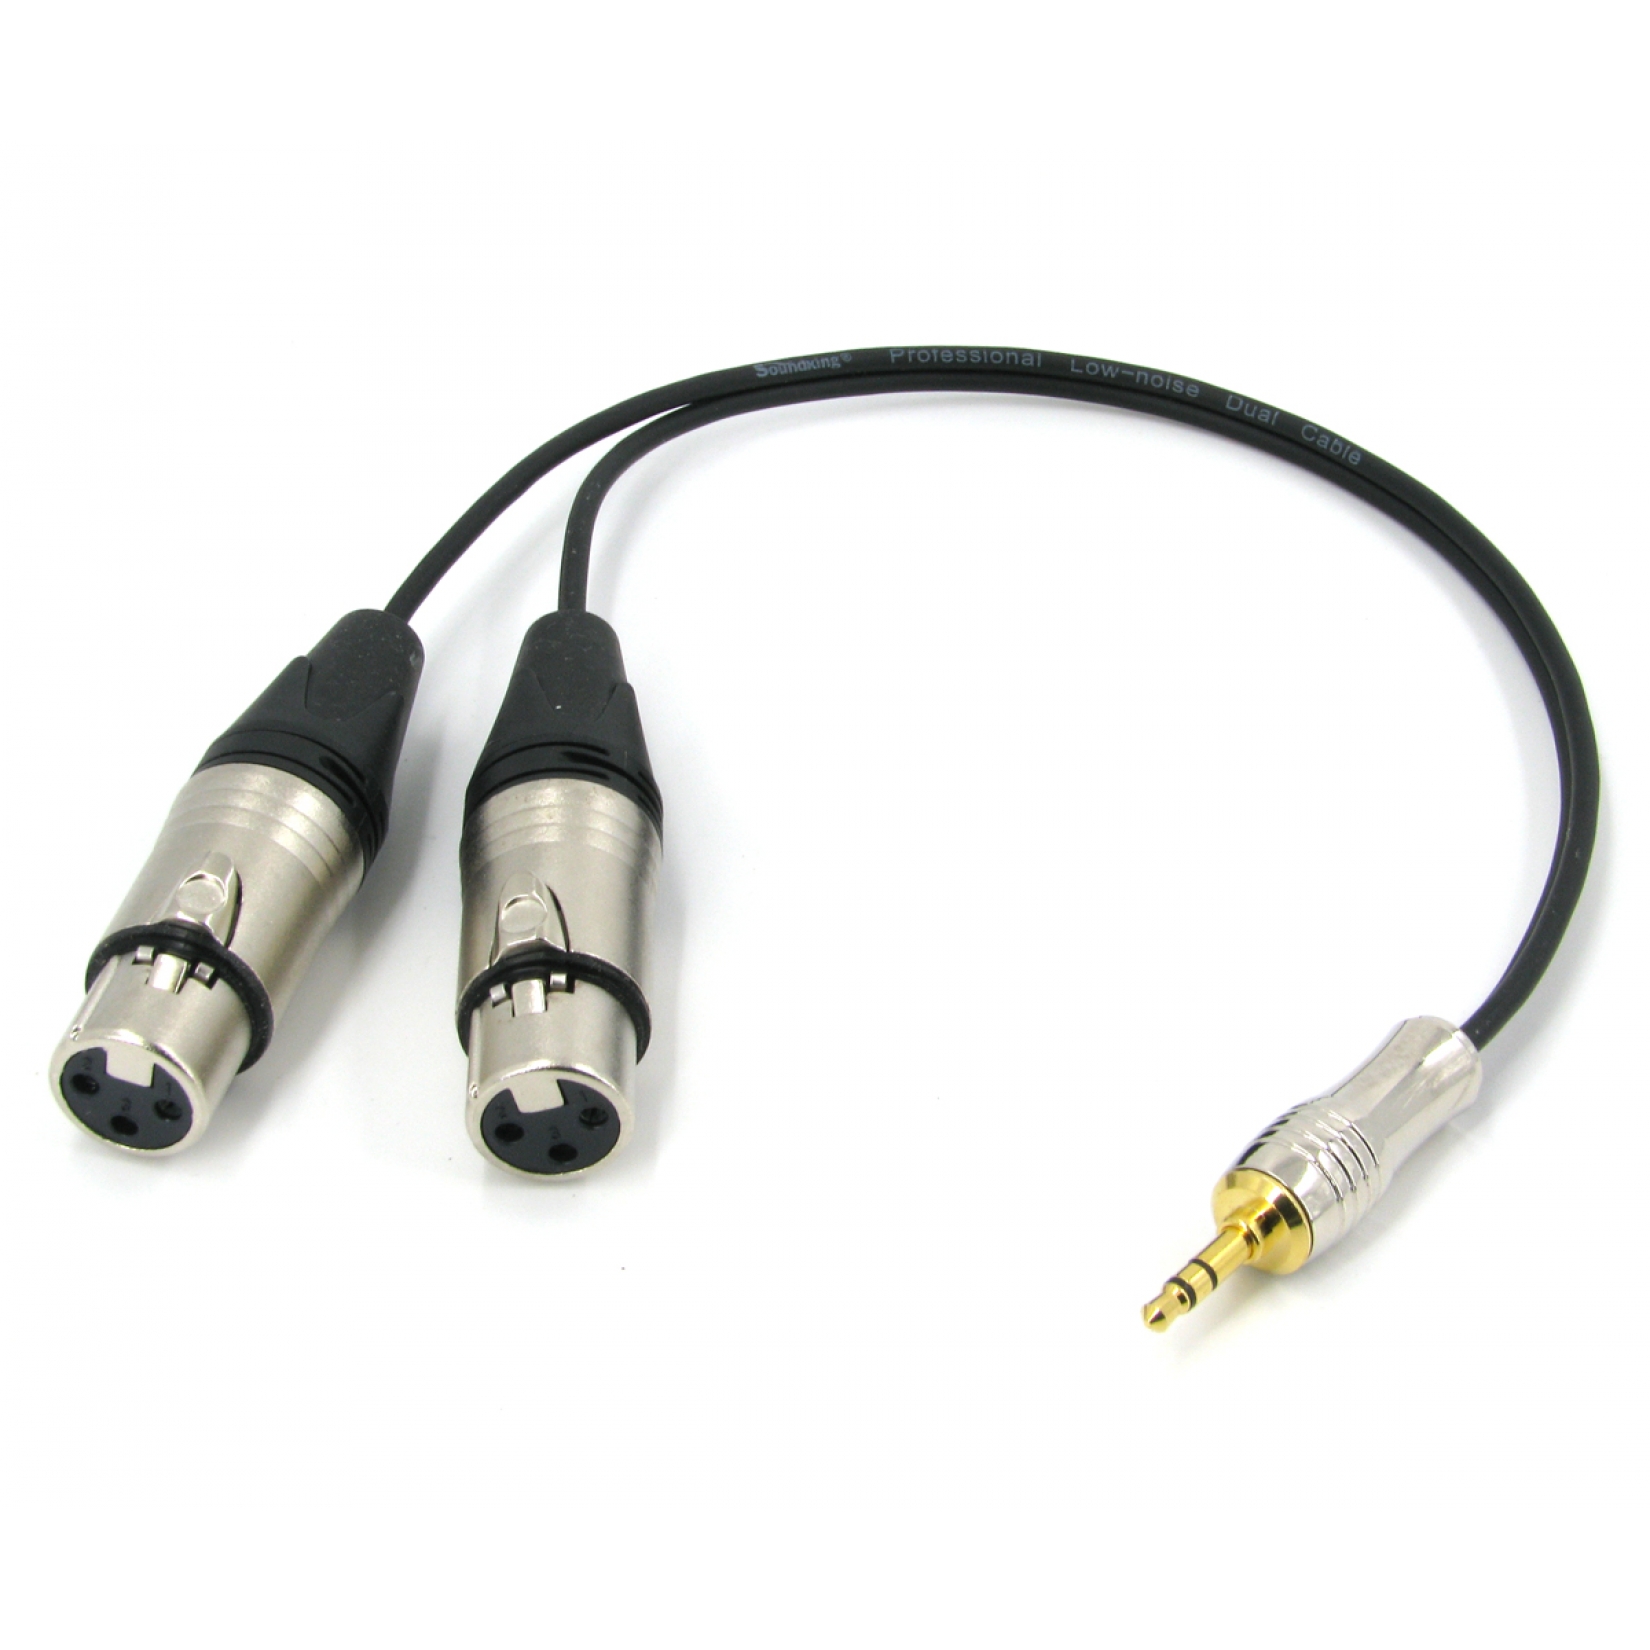 Y кабель mini JACK 3.5 - 2 x XLR (F) несимметричный, netaudio, GA402, длина 0.5 метра